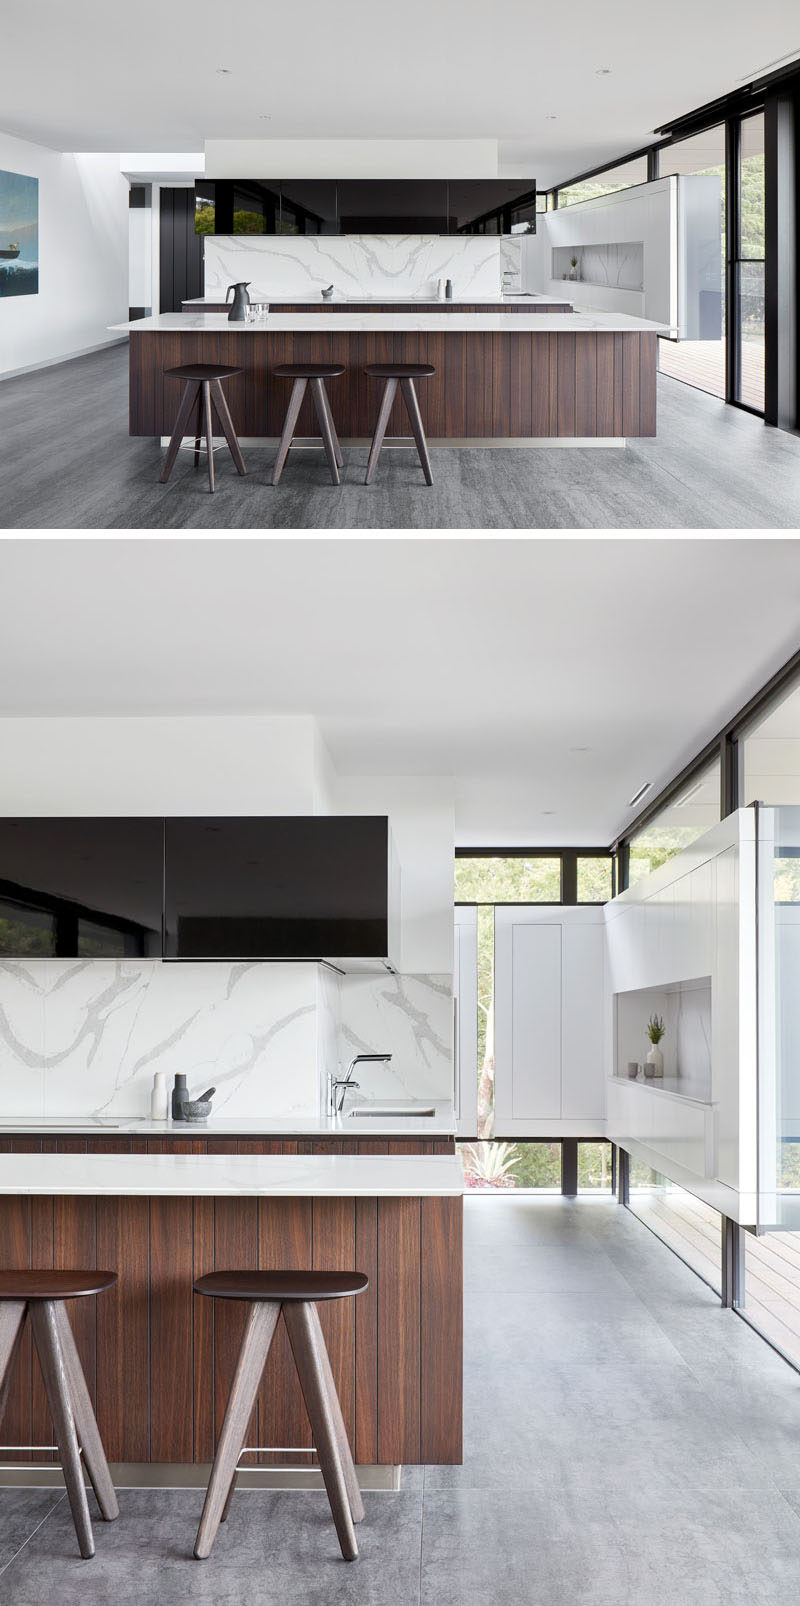  В этой современной кухне ярко-стены контрастируют с черными элементами дизайна, такими как мебель и оконные рамы, деревянный остров пространству нотку тепла. #ModernKitchen #KitchenDesign 